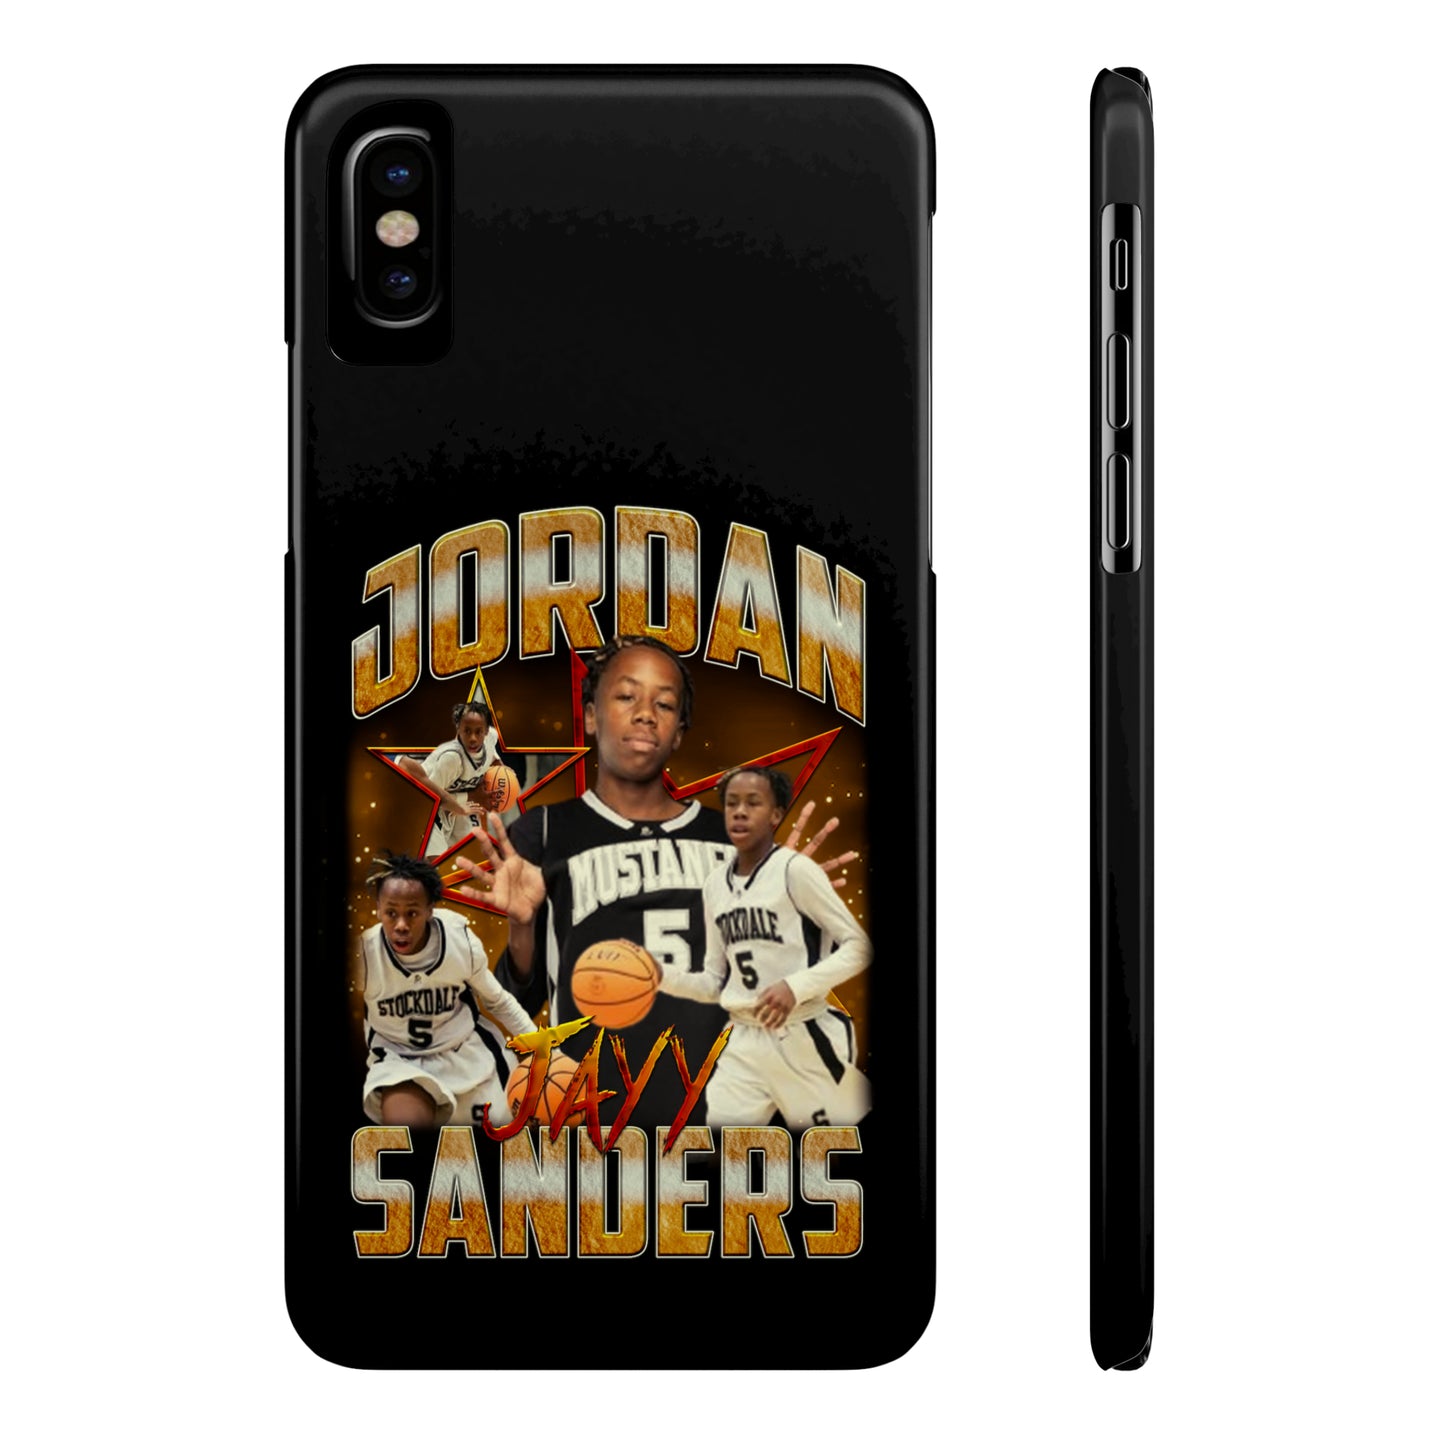 Jordan Sanders Phone Case